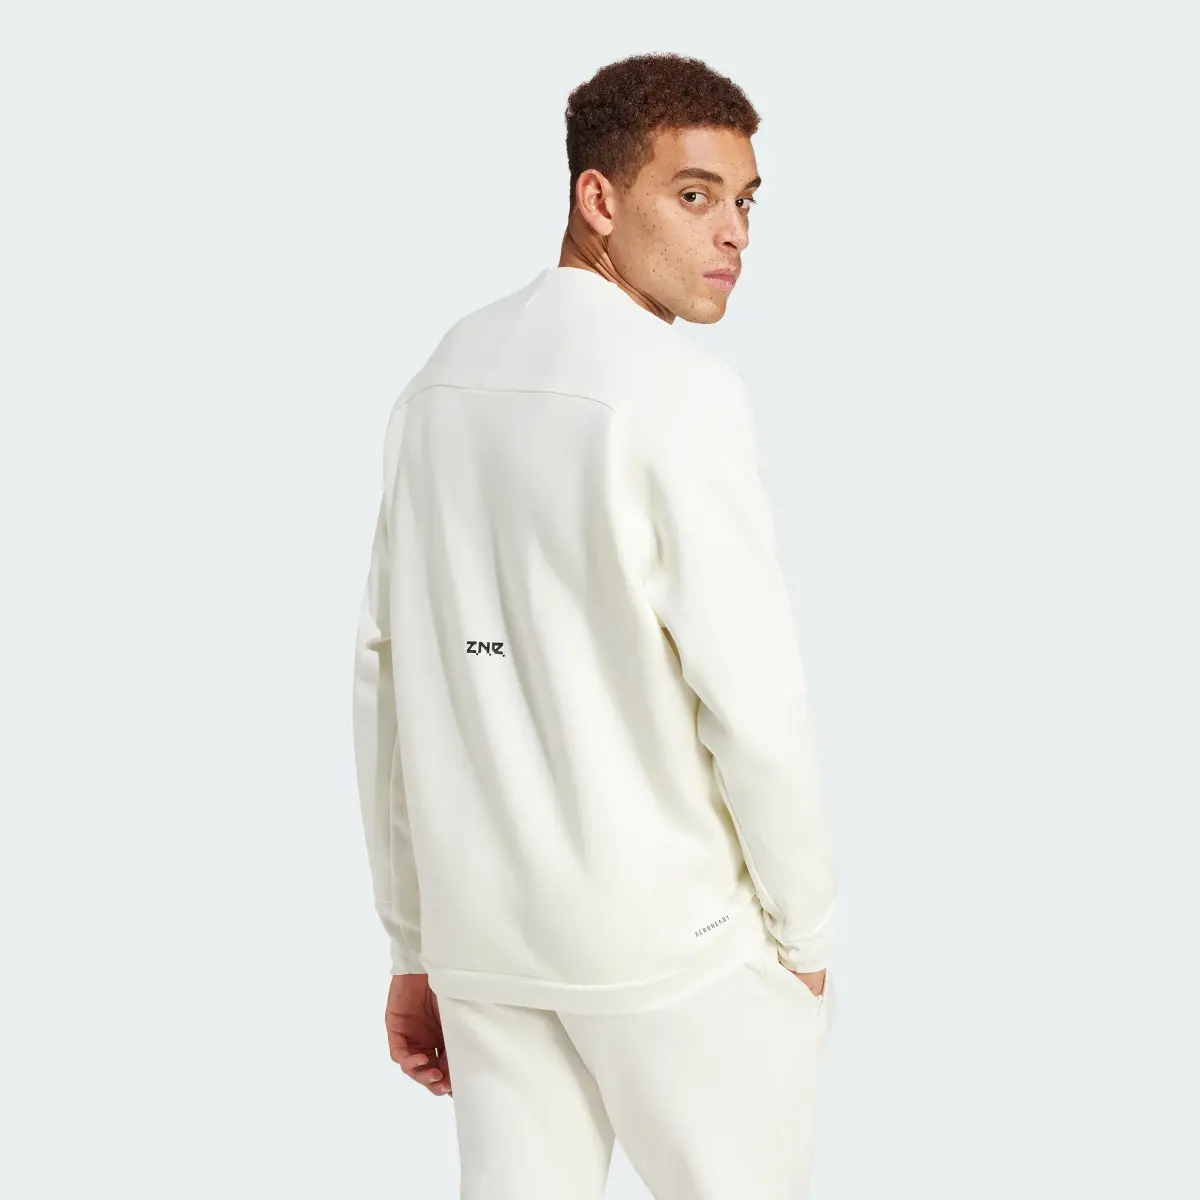 Adidas Z.N.E. Premium Sweatshirt. 3